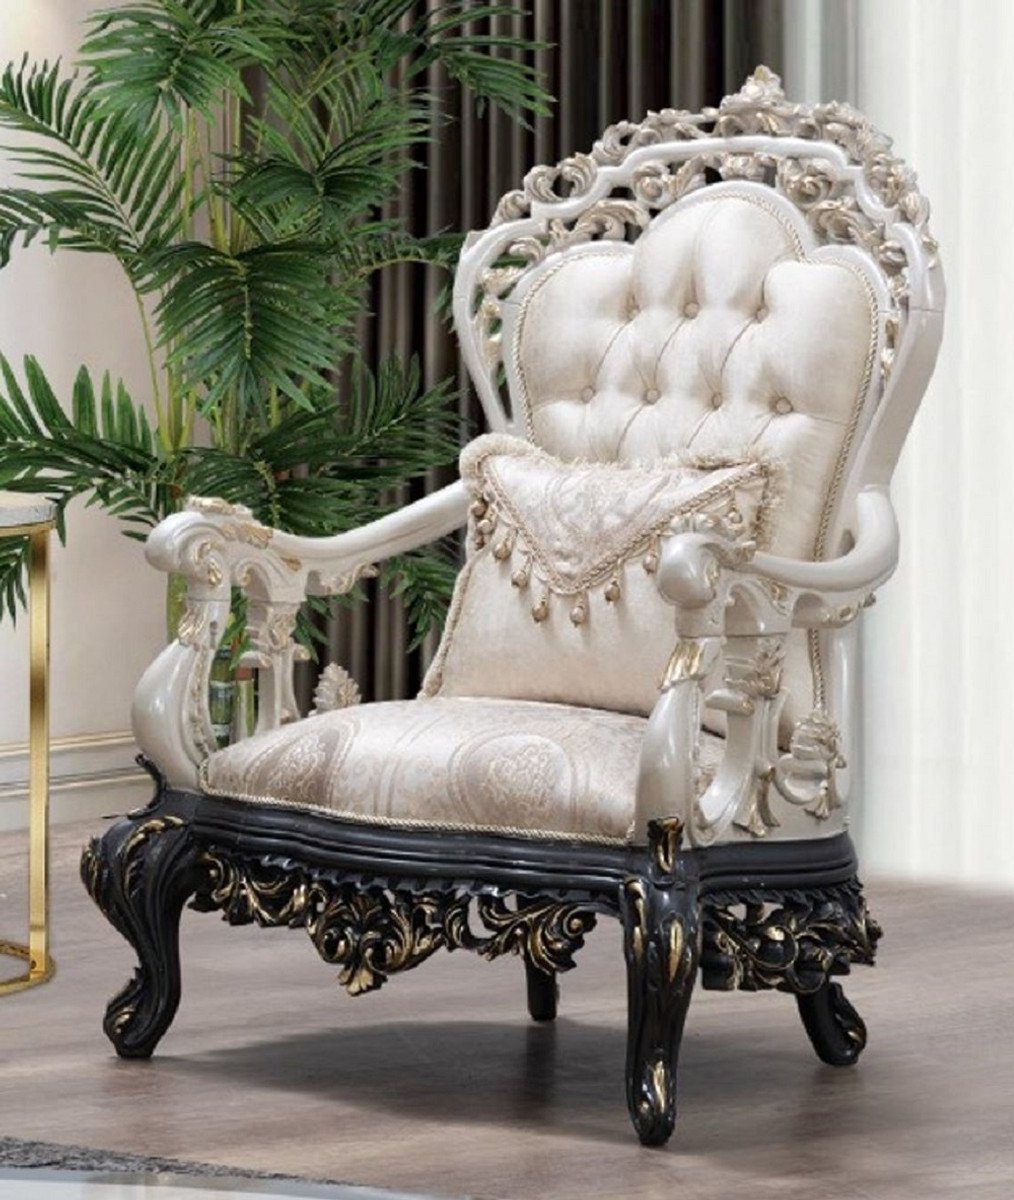 Casa Padrino Sessel Luxus Barock Sessel Creme / Beige / Weiß / Grau / Gold - Prunkvoller Wohnzimmer Sessel mit elegantem Muster - Barock Wohnzimmer & Hotel Möbel - Edel & Prunkvoll